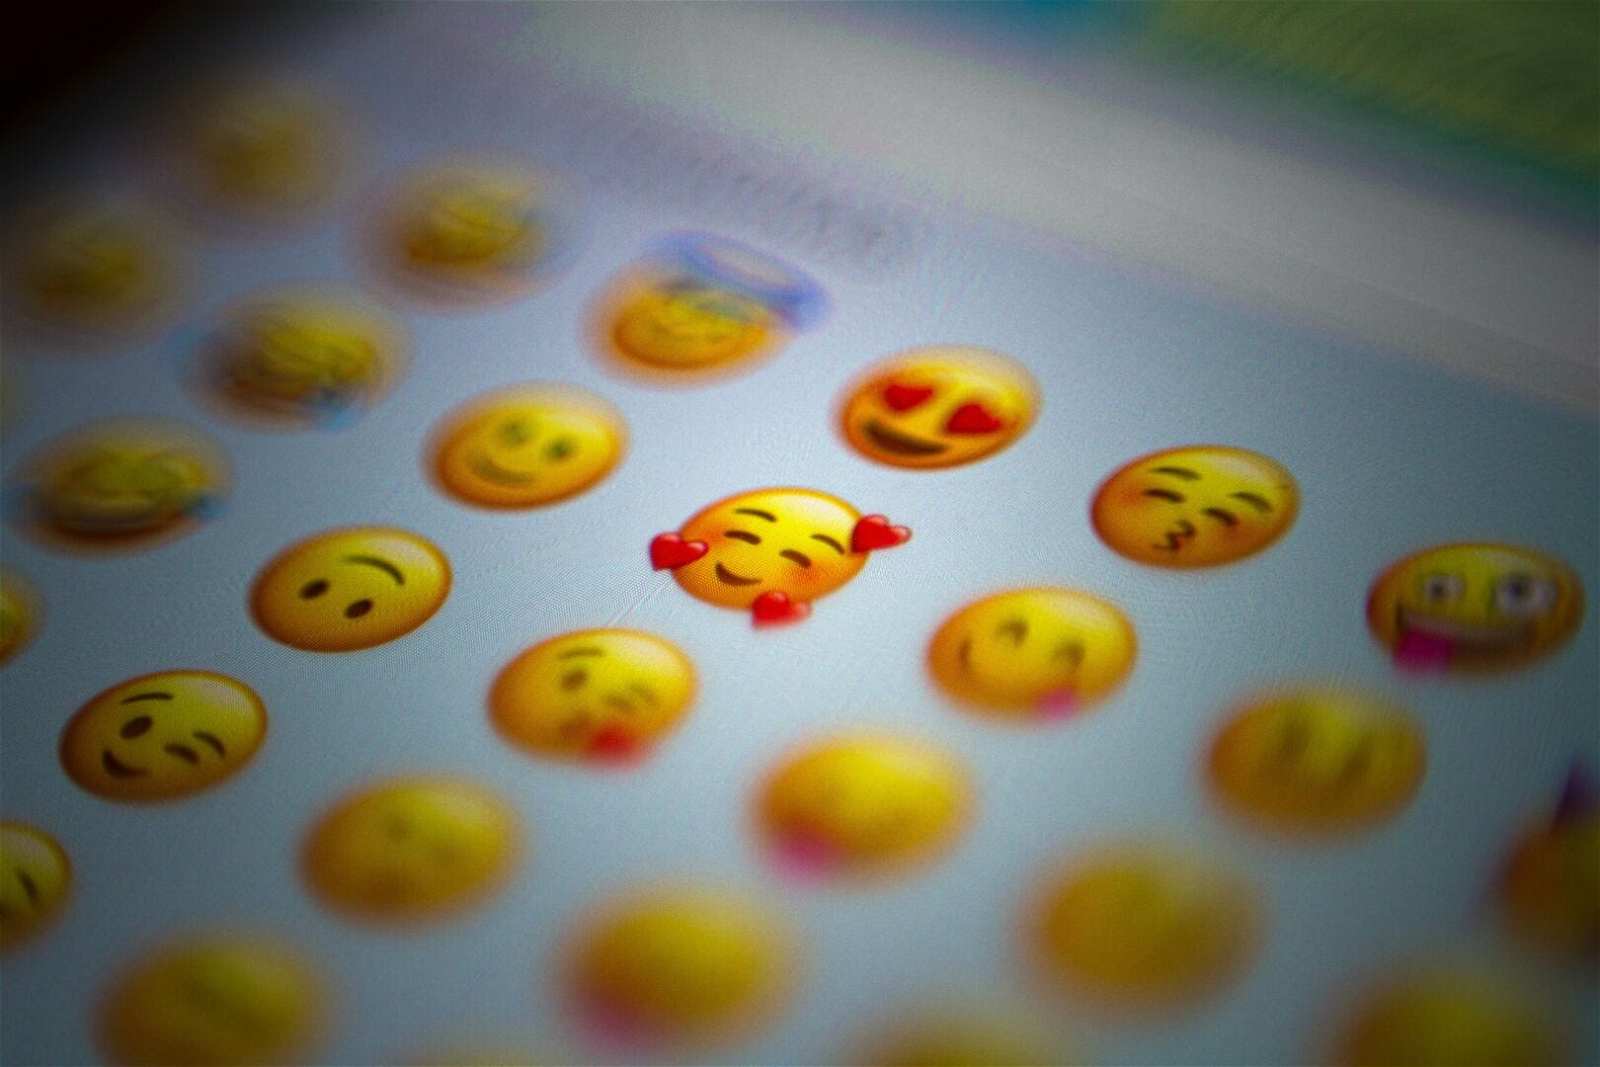 emoji email subject